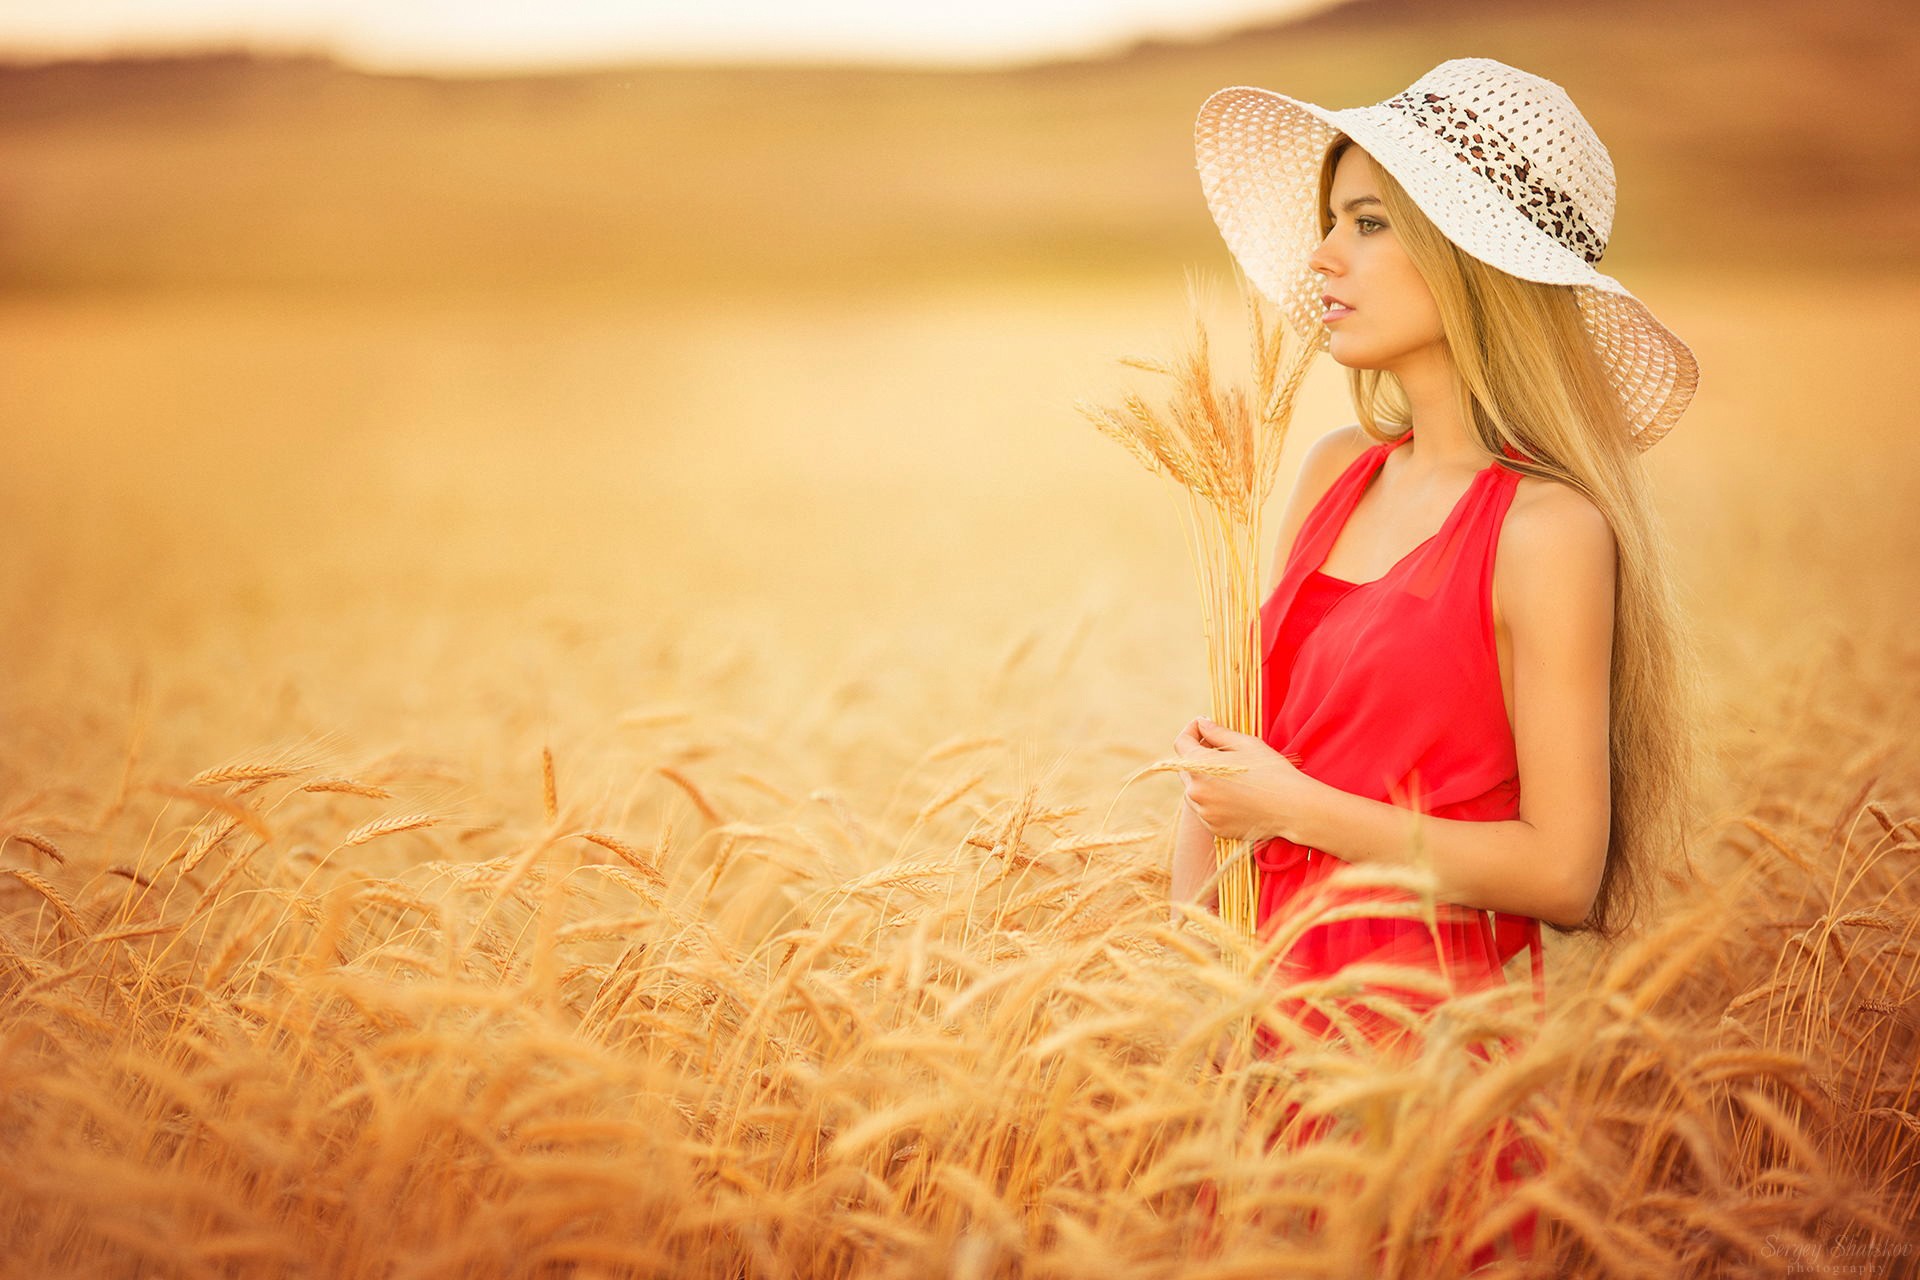 women model blonde long hair women outdoors open mouth red dress grain spikelets Wallpaper